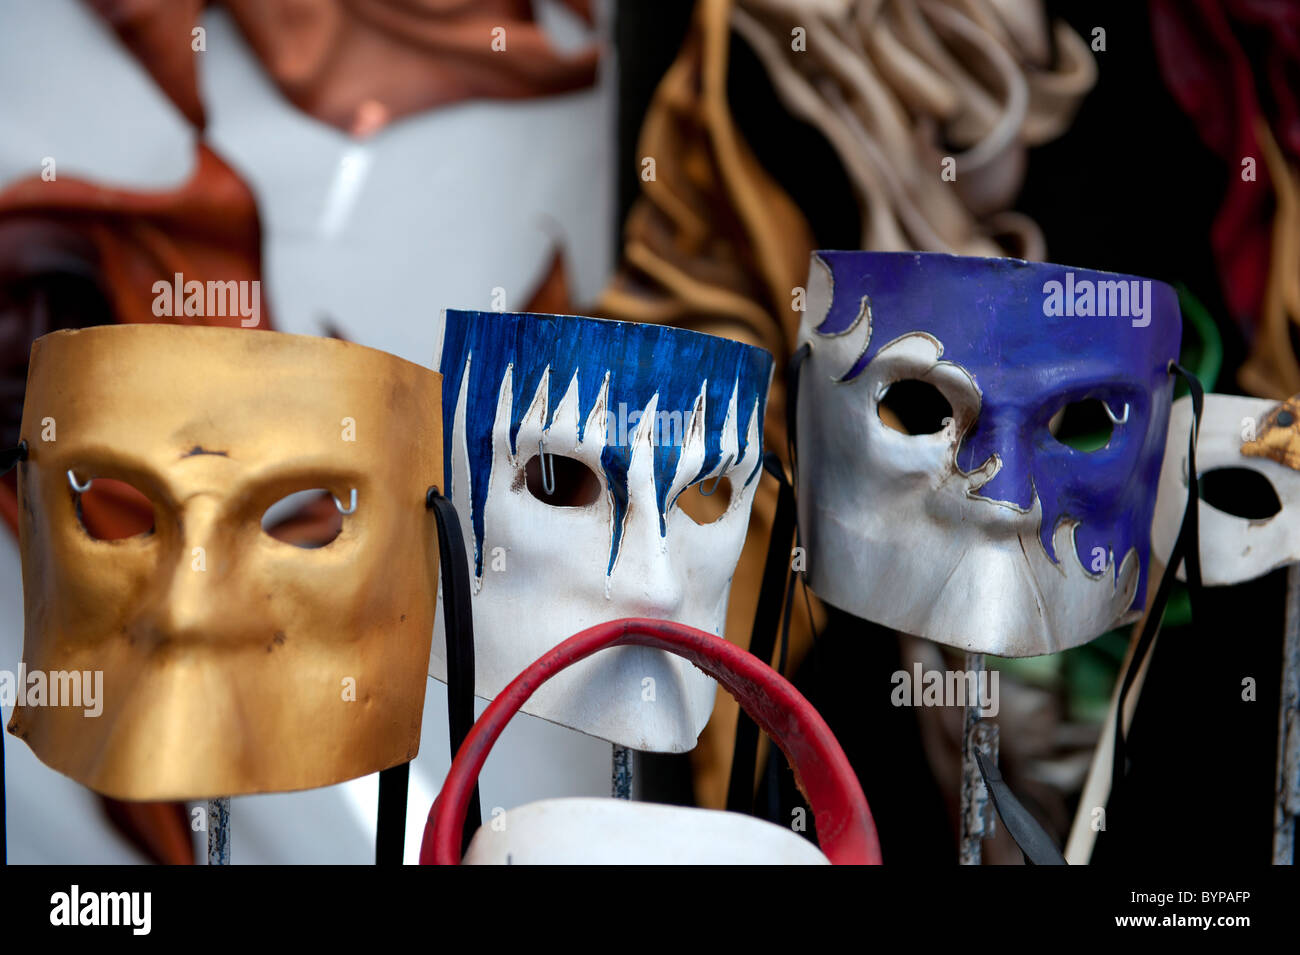 Masque de visage sur les étals de rue Barcelone Espagne Banque D'Images